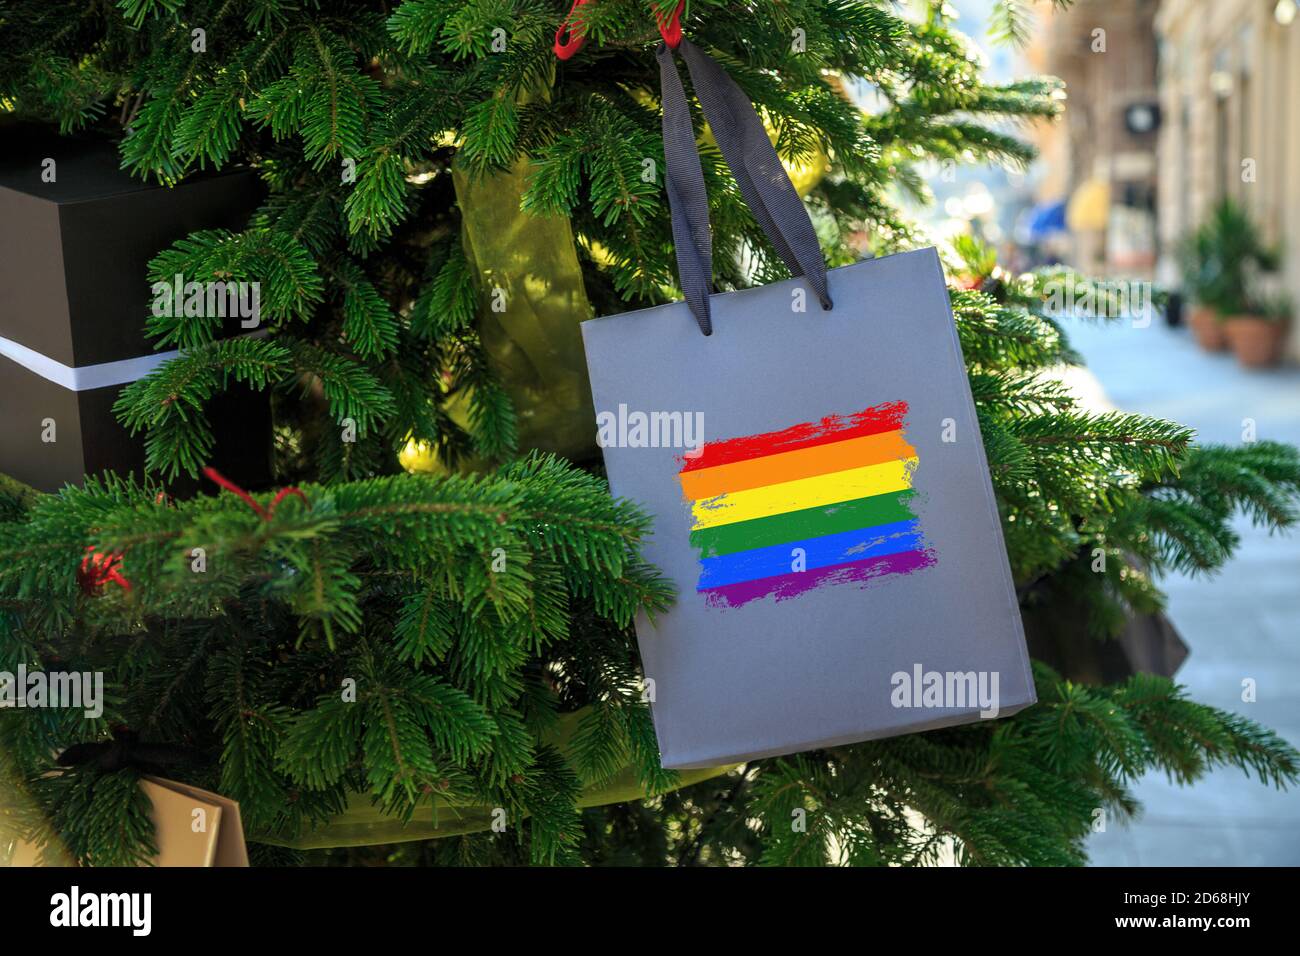 Regenbogen-LGBT-Flagge auf einer Weihnachts-Einkaufstasche als Dekoration auf einem Weihnachtsbaum auf einer Straße gedruckt. Stockfoto